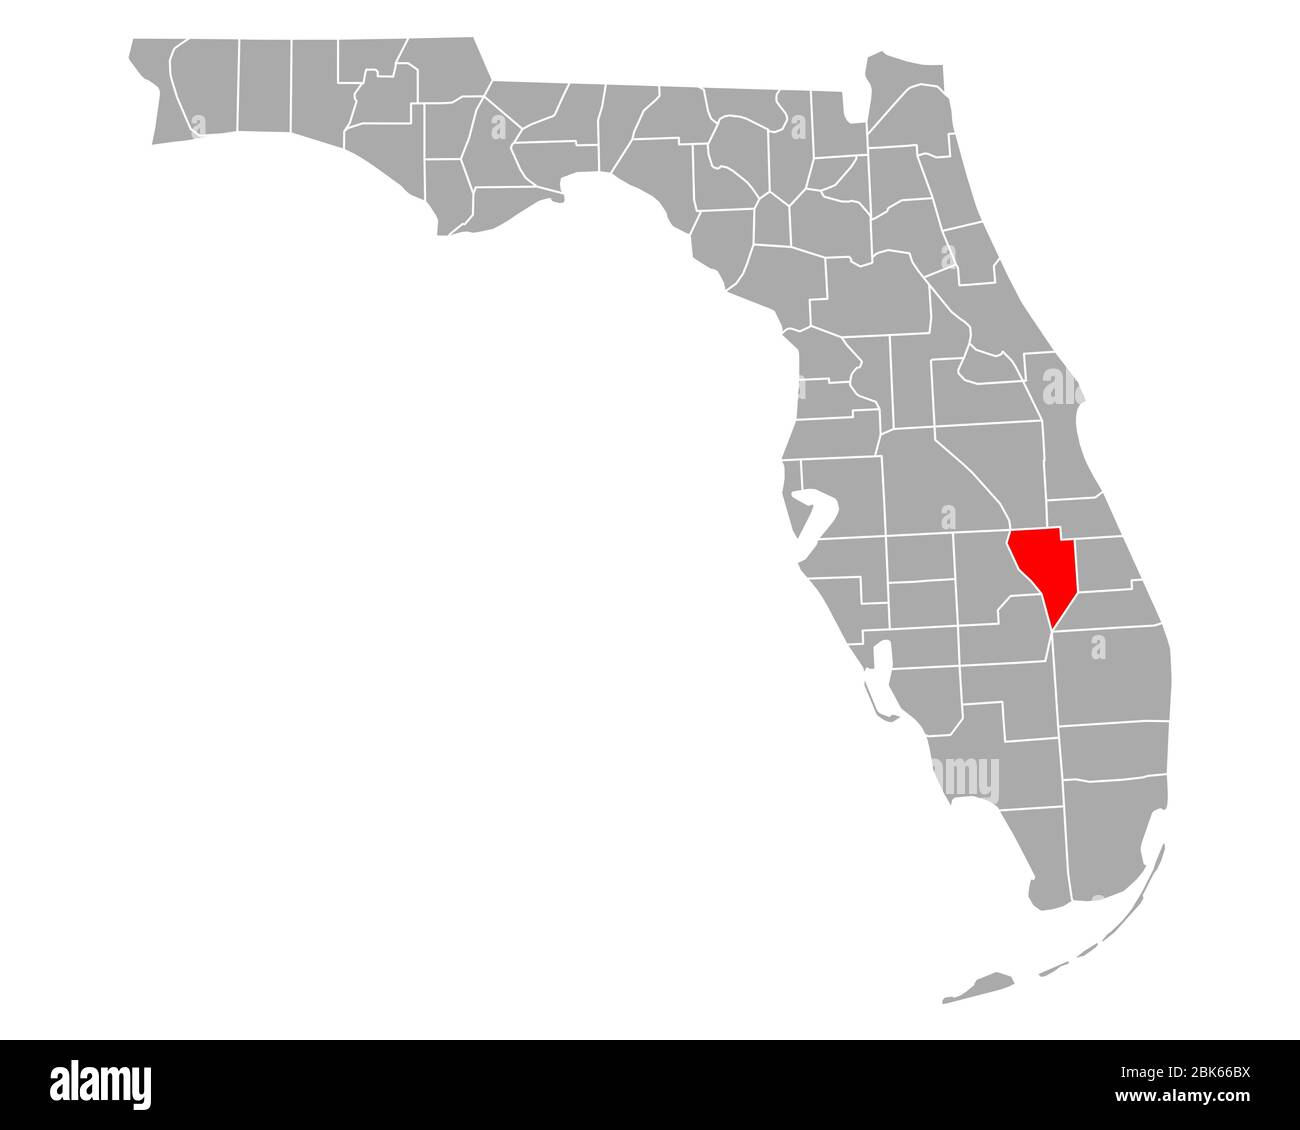 map-of-okeechobee-in-florida-stock-photo-alamy